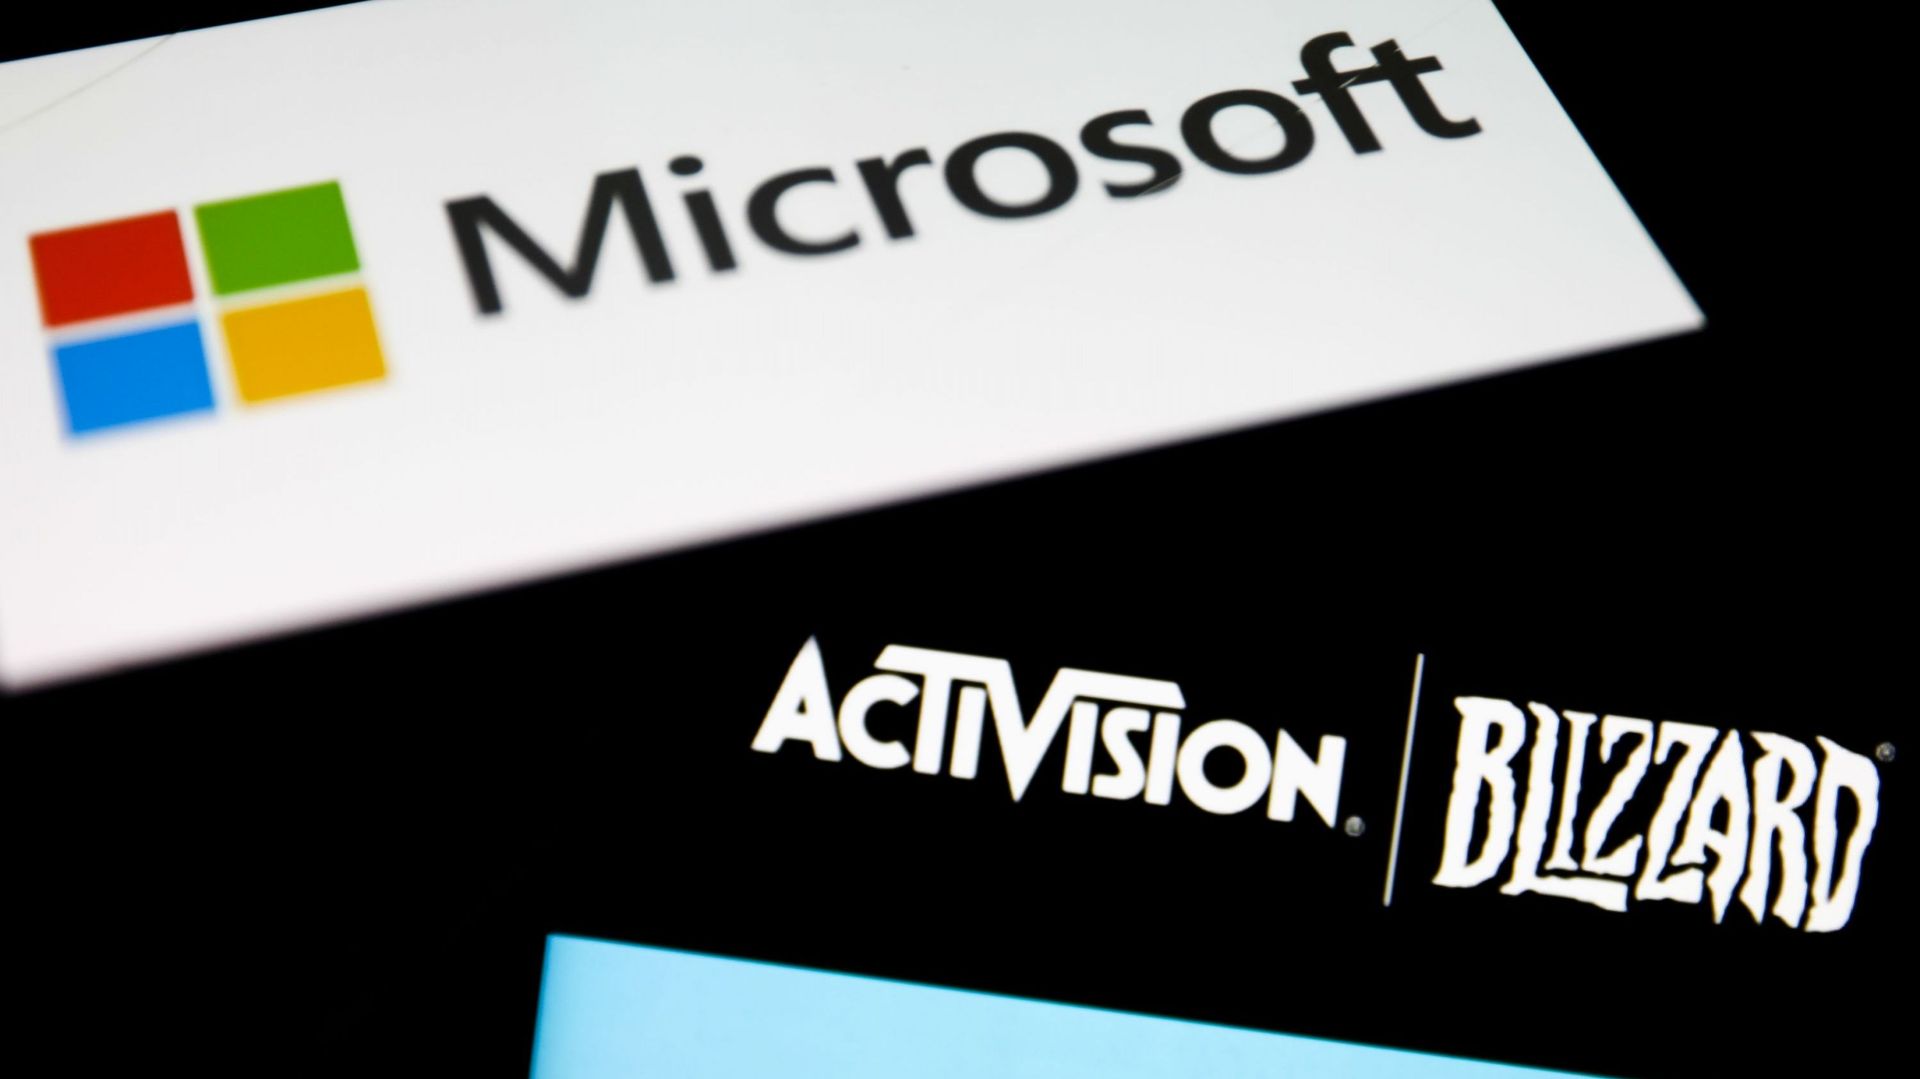 La validation du rachat d'Activsion-Blizzard par Microsoft est encore loin d'être entérinée définitivement - 